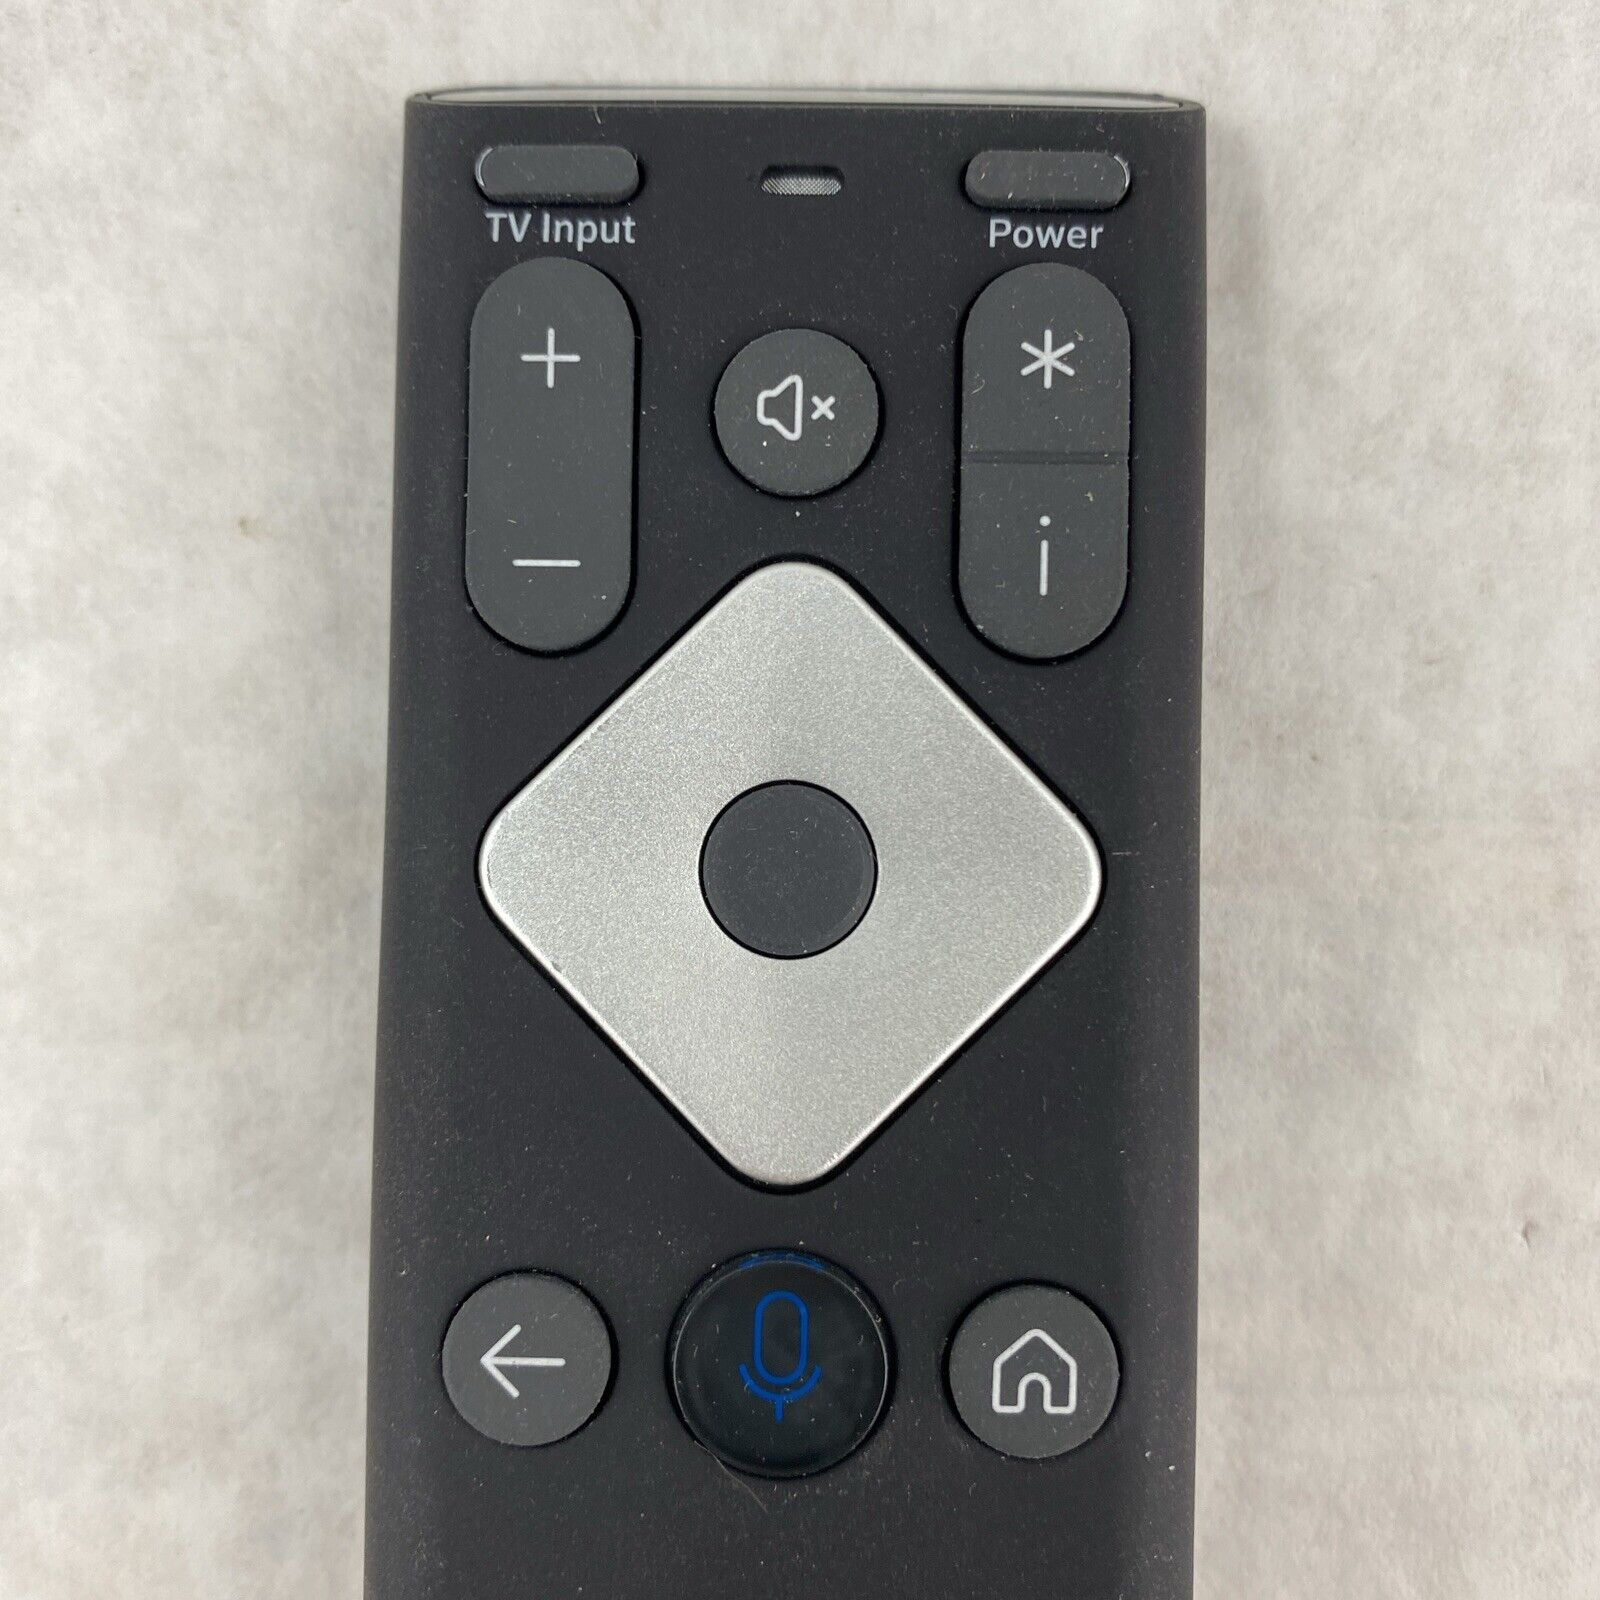 Lot( 2 ) Xfinity XR16 Comcast Remote Control R34353B for Flex Streaming Box